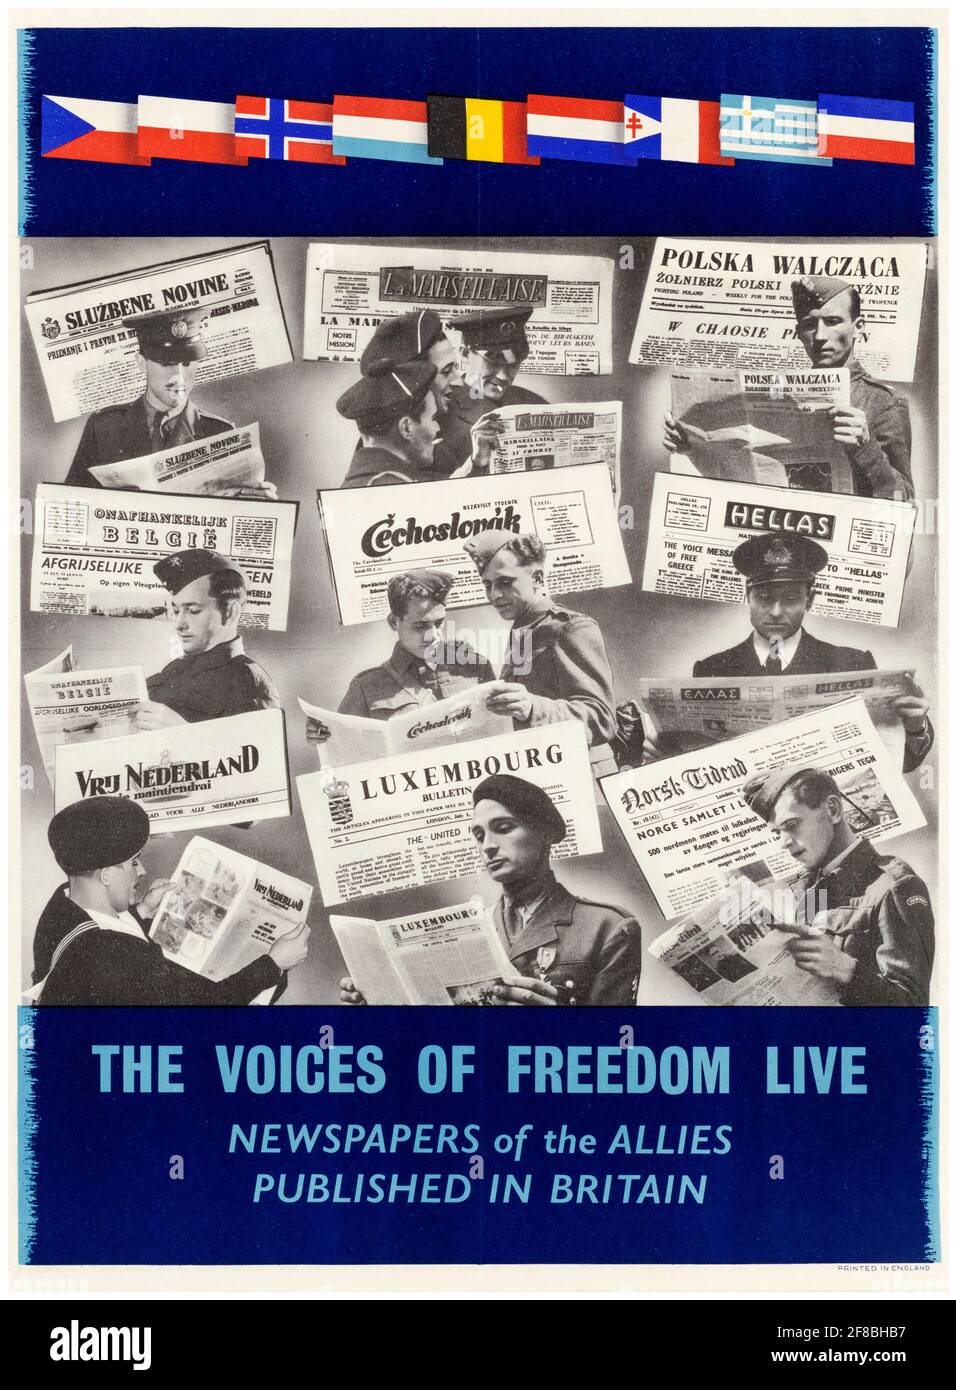 British, WW2, Voices of Freedom live: Periódicos de los Aliados publicados en Gran Bretaña, póster motivacional, 1942-1945 Foto de stock